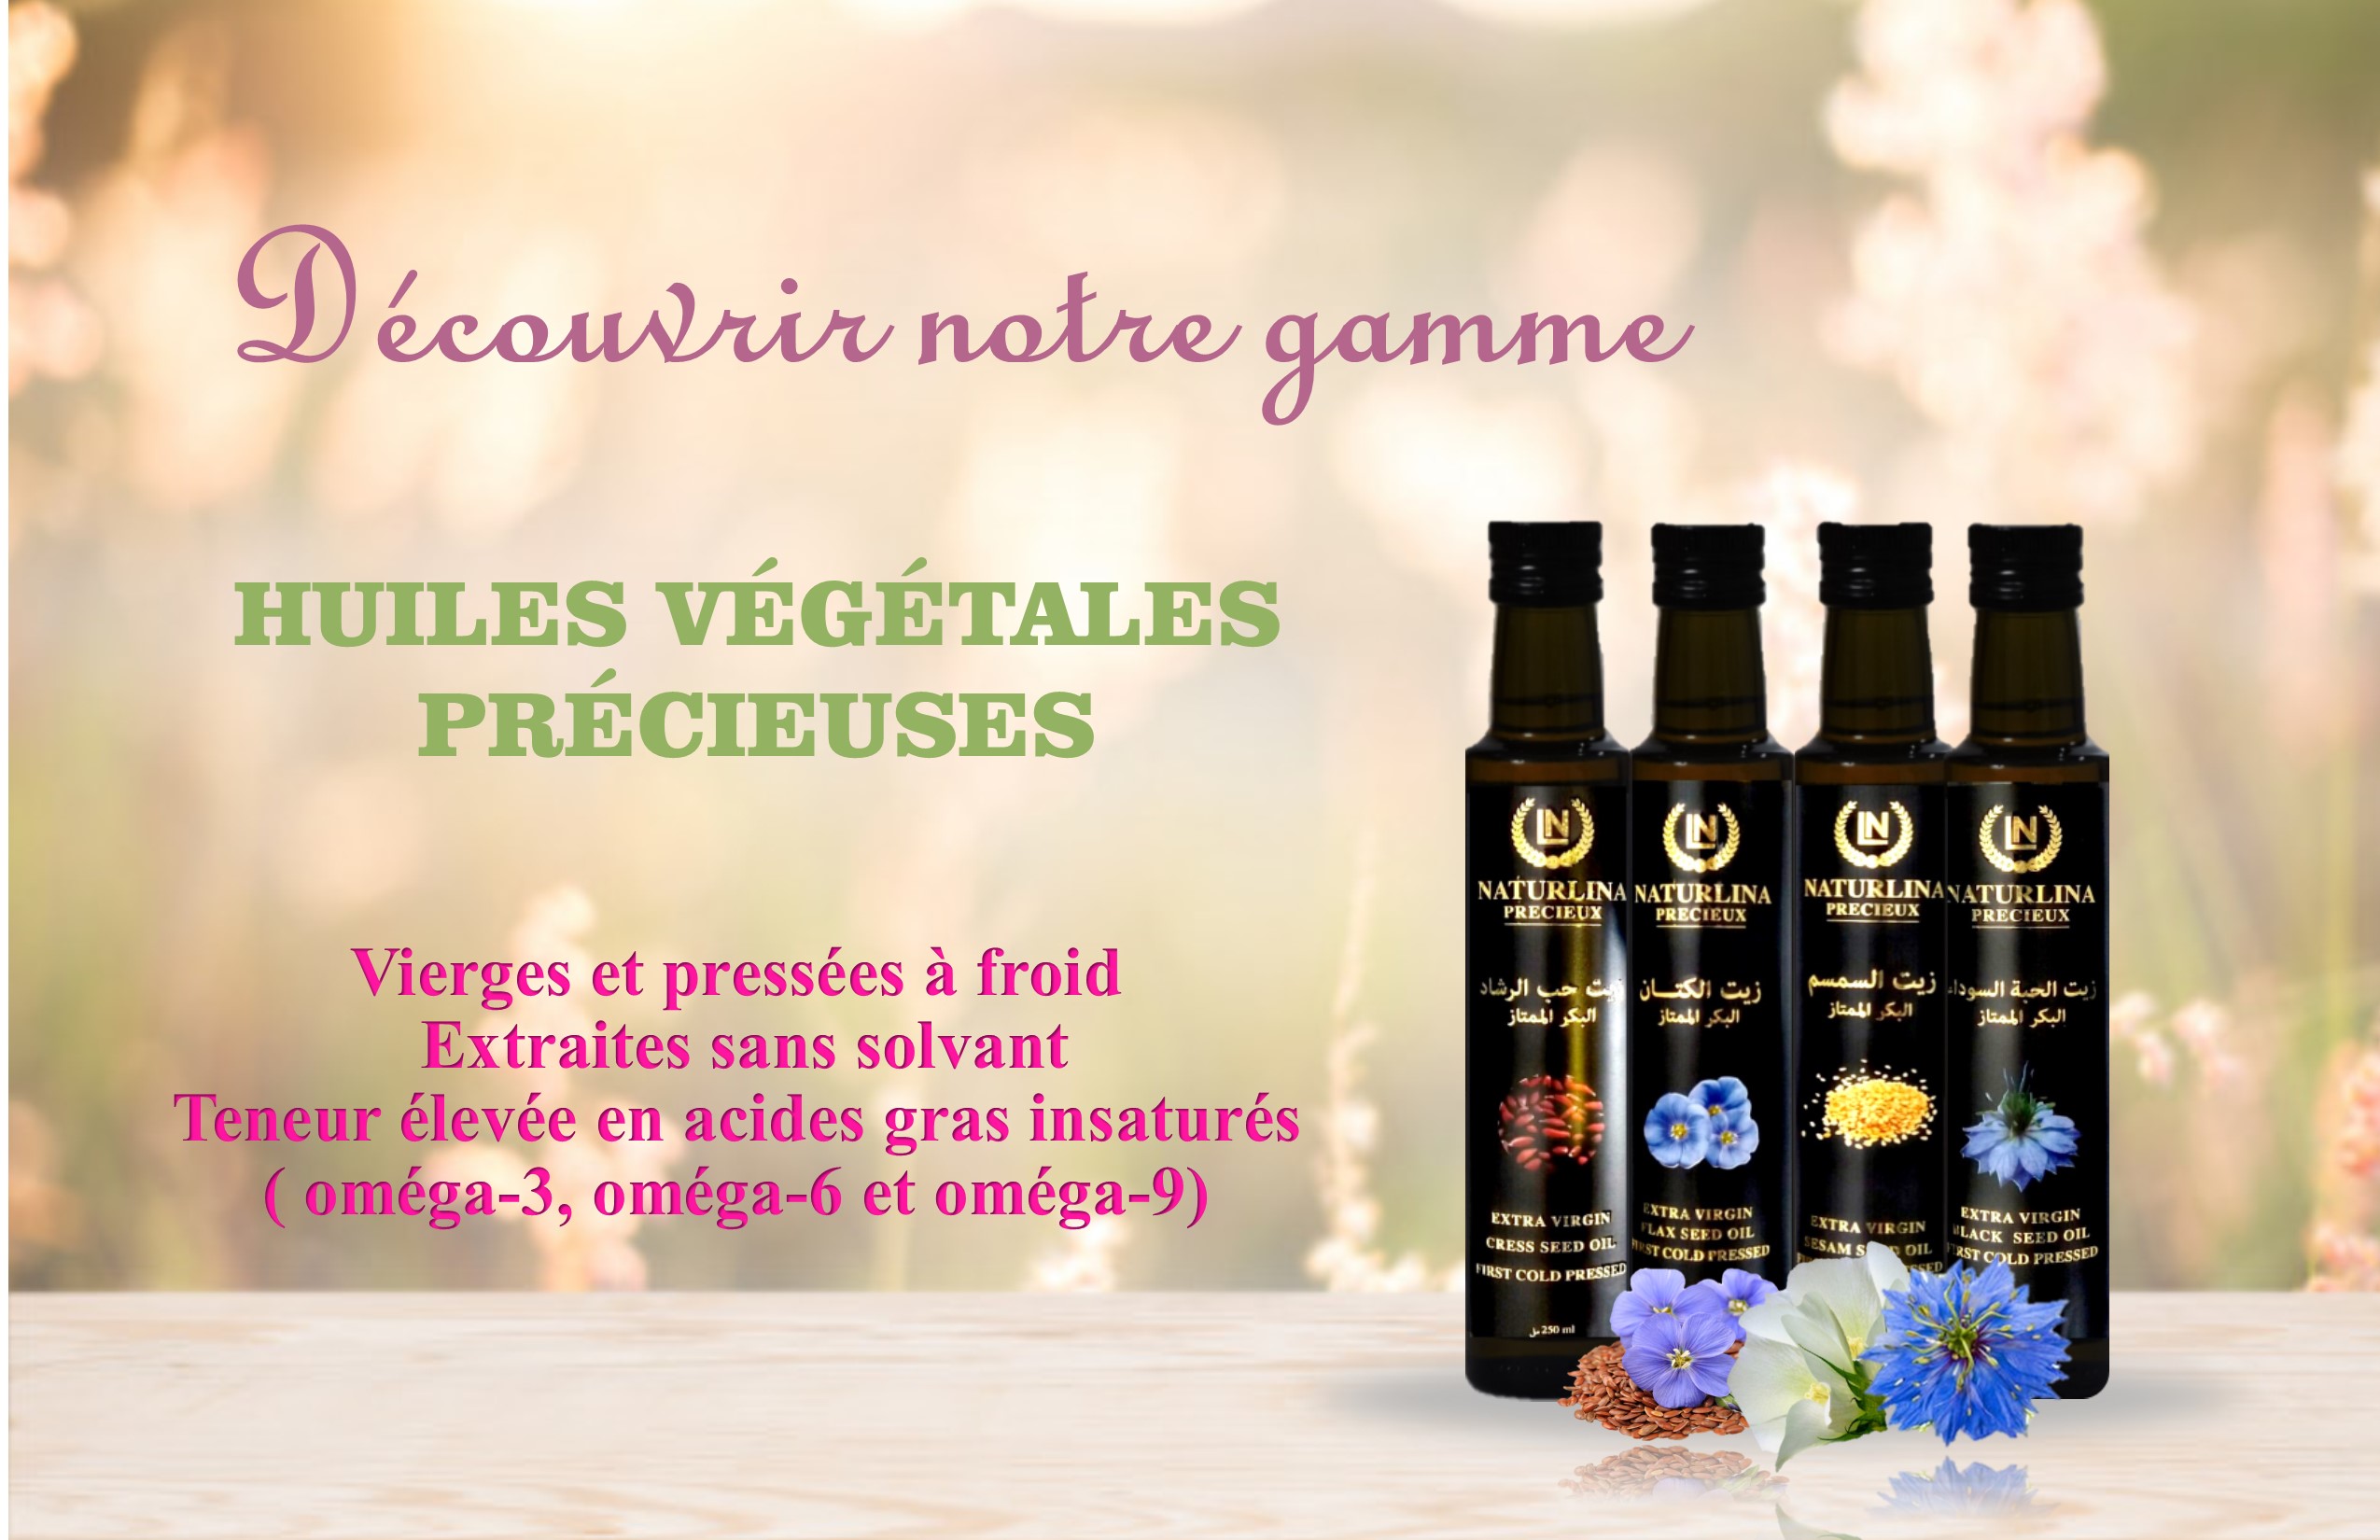 Product image - Nous somme une société Tunisienne spécialisée dans la fabrication des huile végétales 100% naturelles pressées à froid (huile de nigelle , huile de cresson , huile de sésame ,huile de lin ...).nous cherchons des clients  pour vendre nous produit dans  les marchés extérieurs 